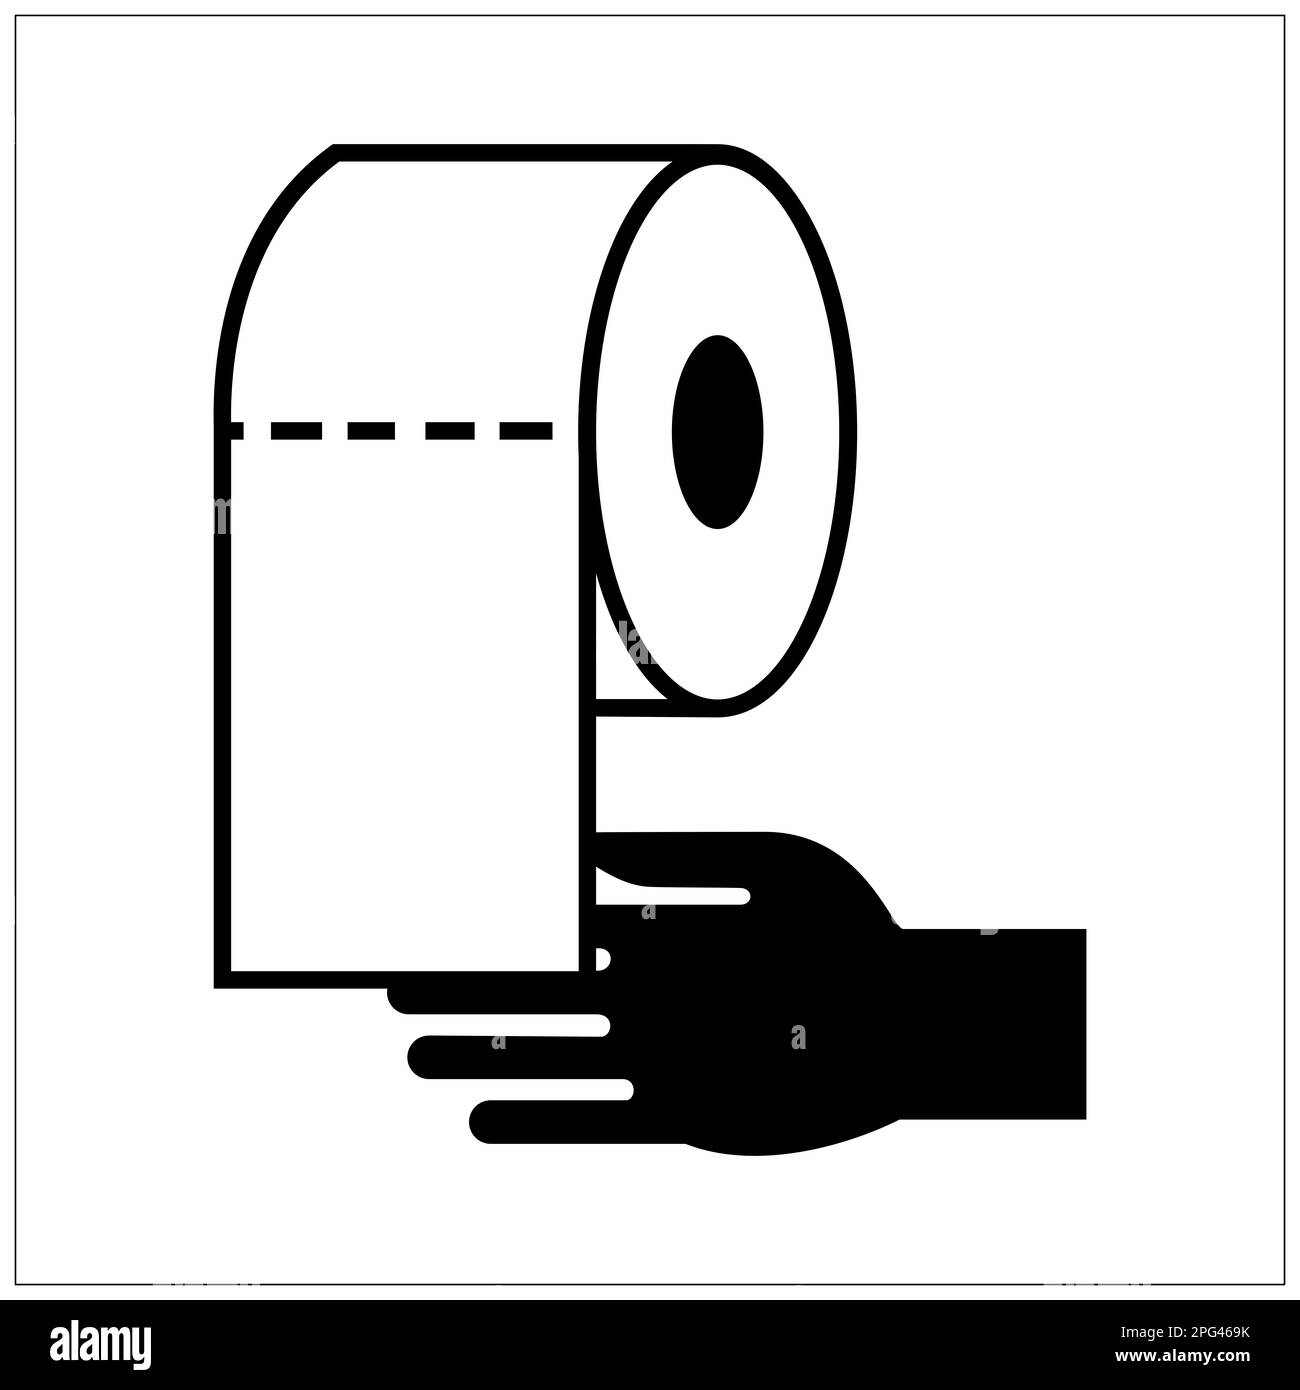 ISO 7001 toilet paper Stock Photo - Alamy